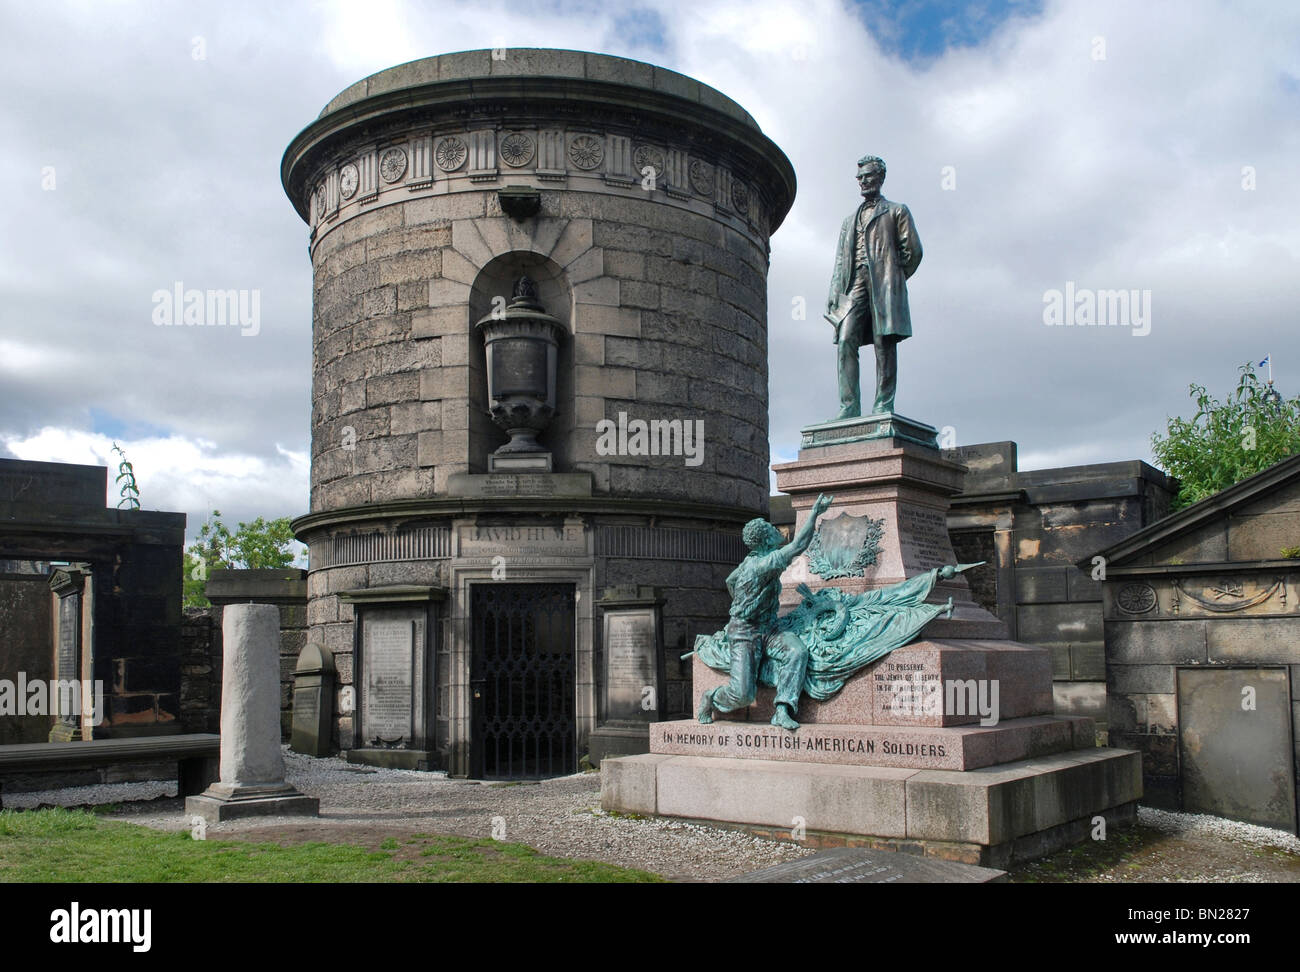 La tomba di David Hume accanto al monumento a Scottish-Americans che hanno combattuto nella guerra civile americana. Foto Stock